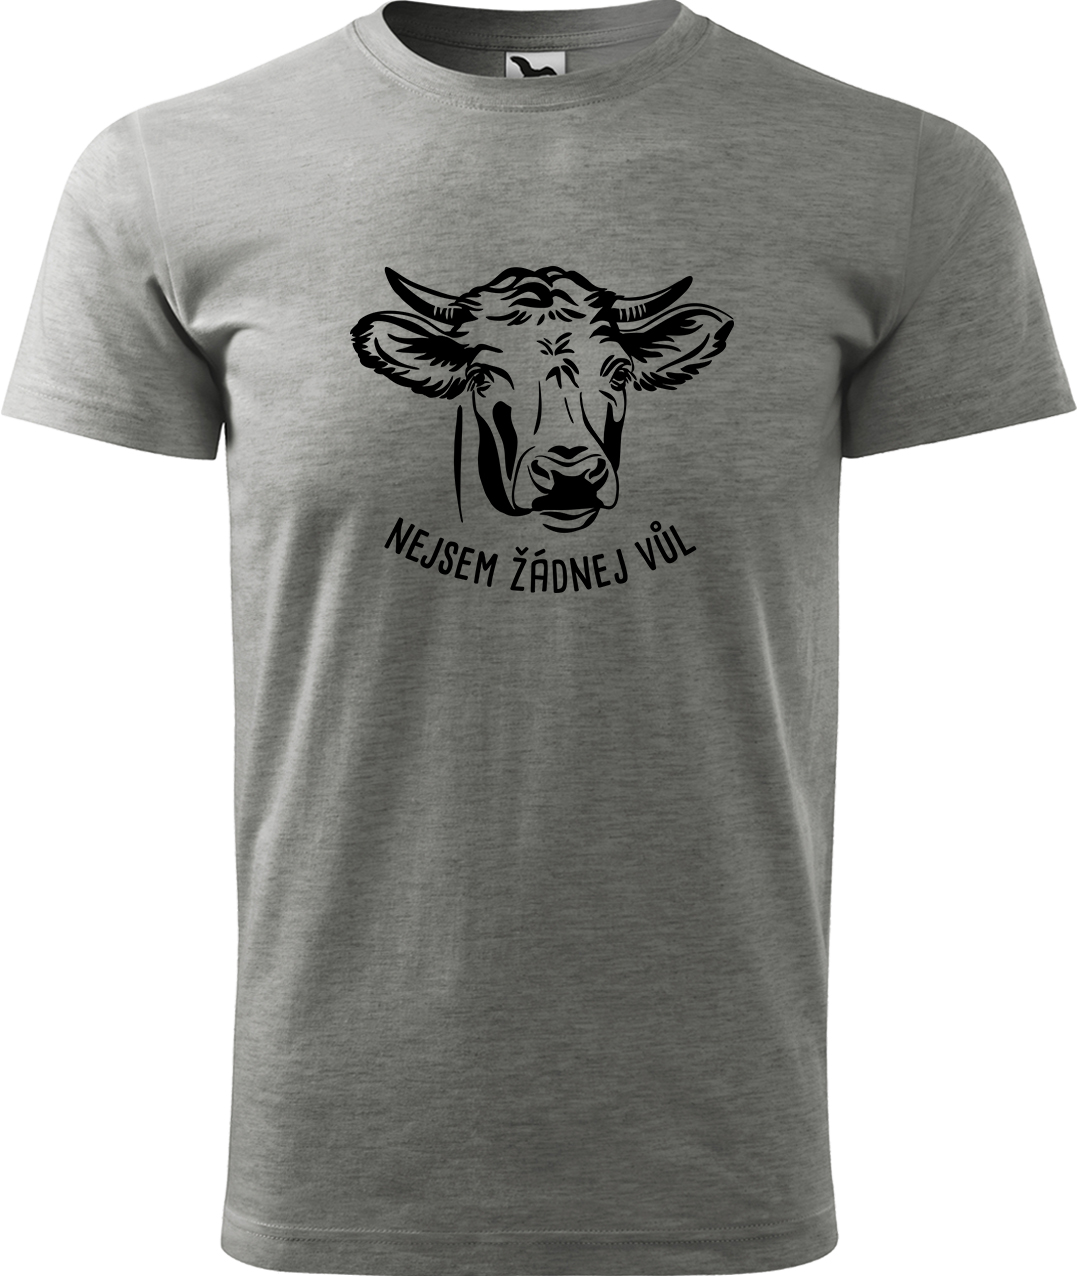 Pánské tričko s krávou - Nejsem žádnej vůl Velikost: S, Barva: Tmavě šedý melír (12)